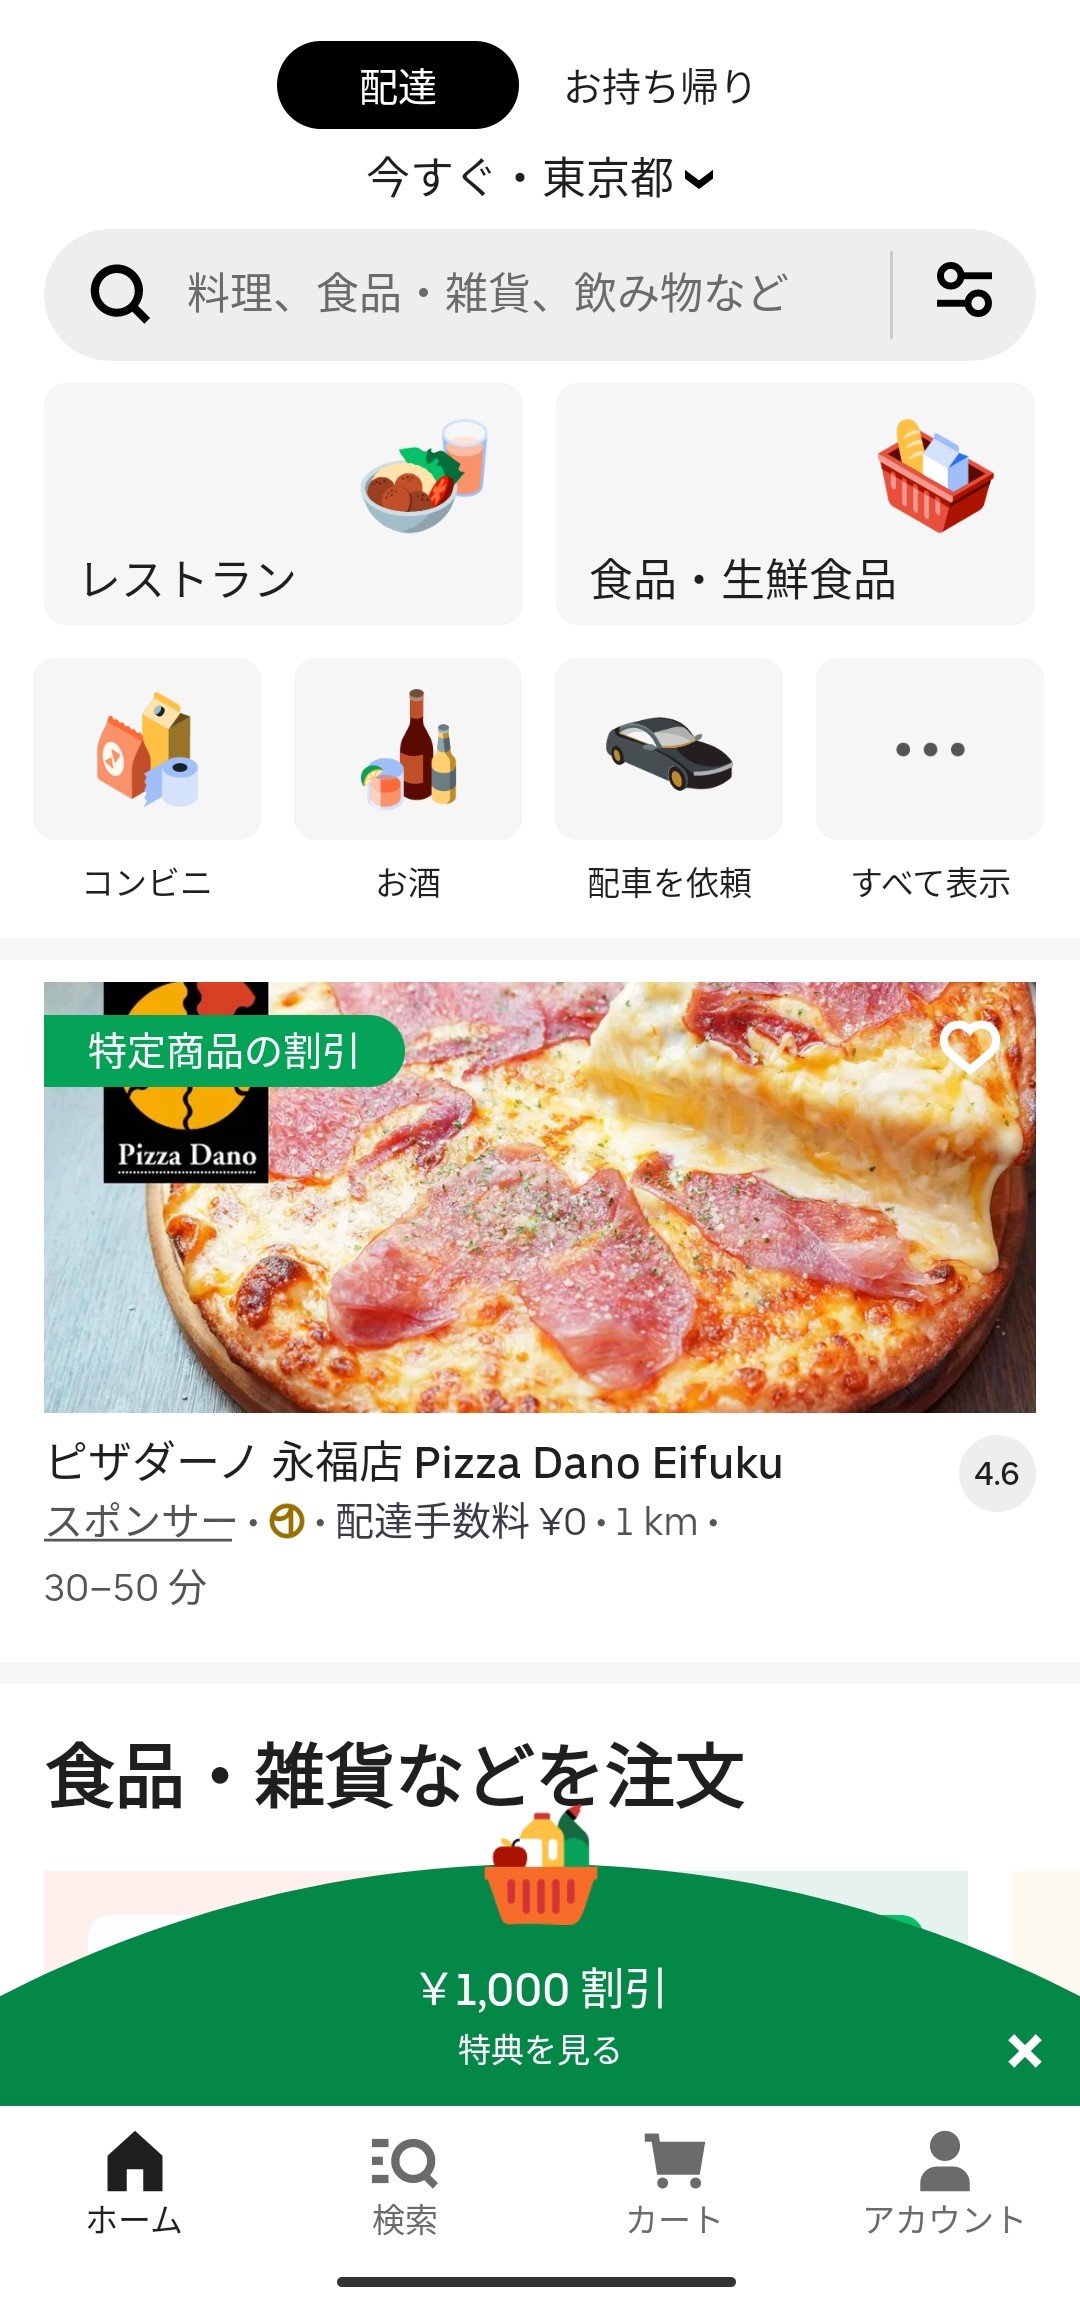 アプリからサービスエリア内の飲食店を検索可能